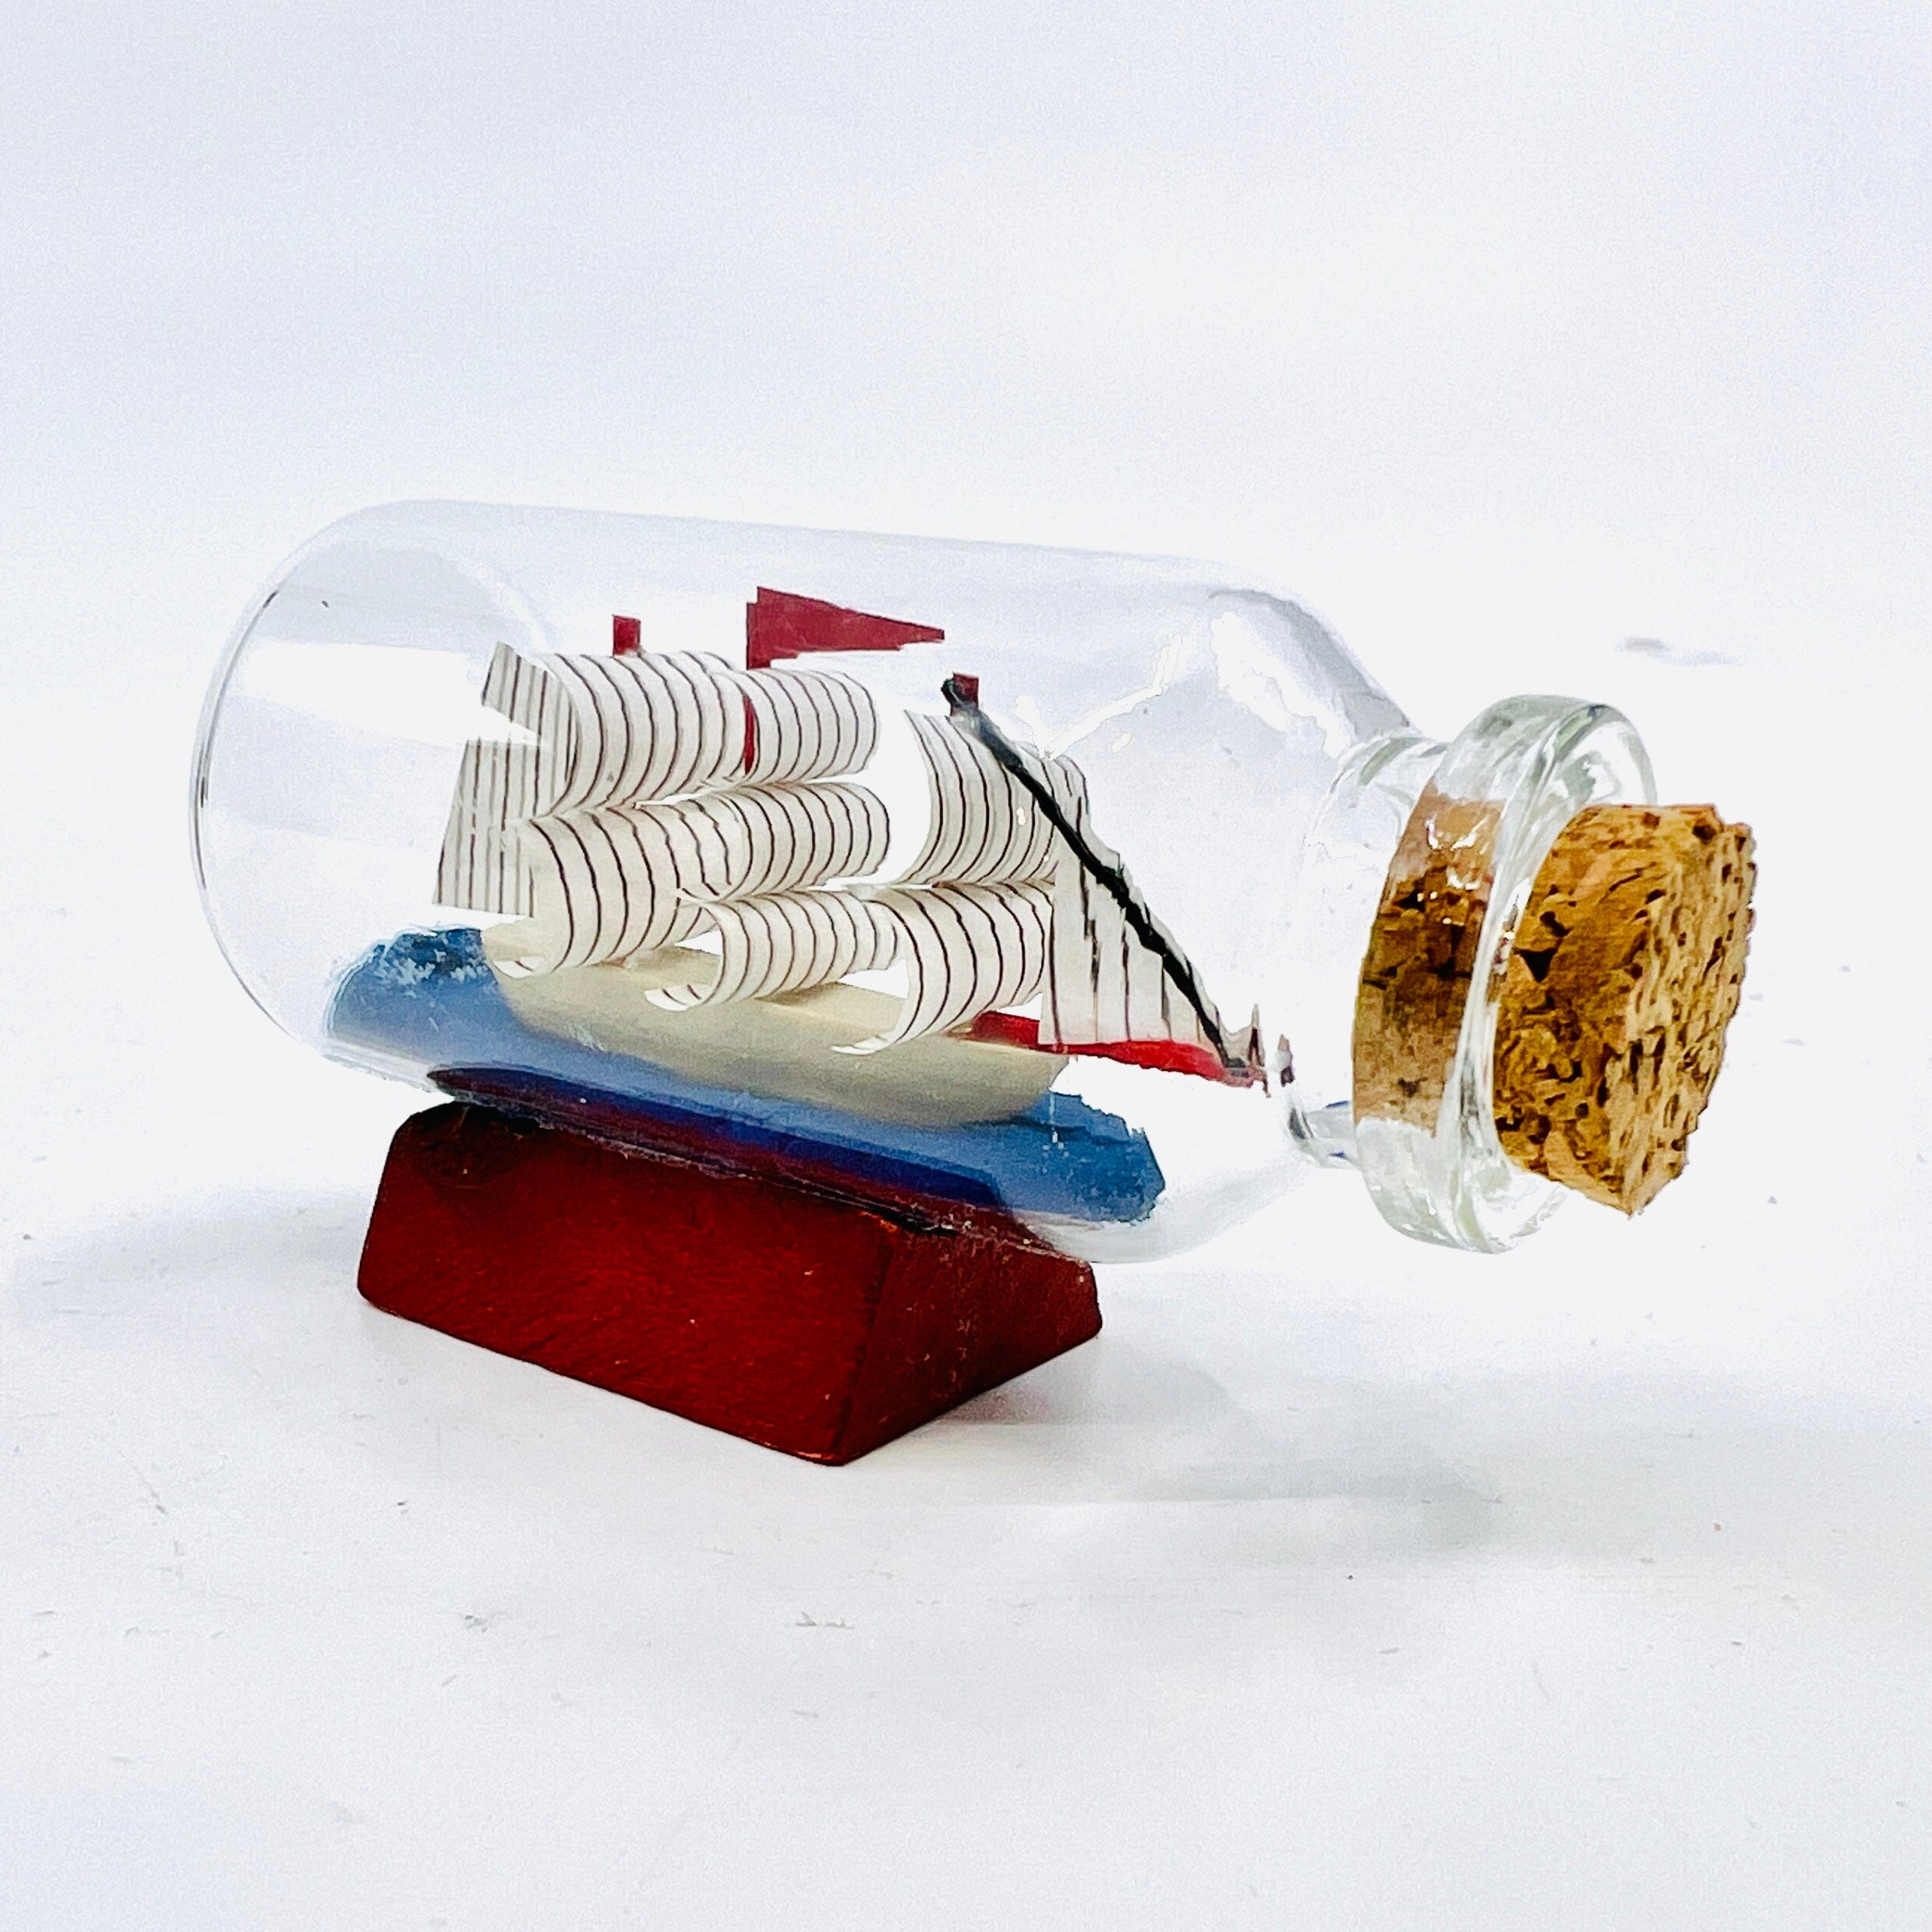 Tiniest Tupper-Wear Set - Luke Adams Glass Blowing Studio